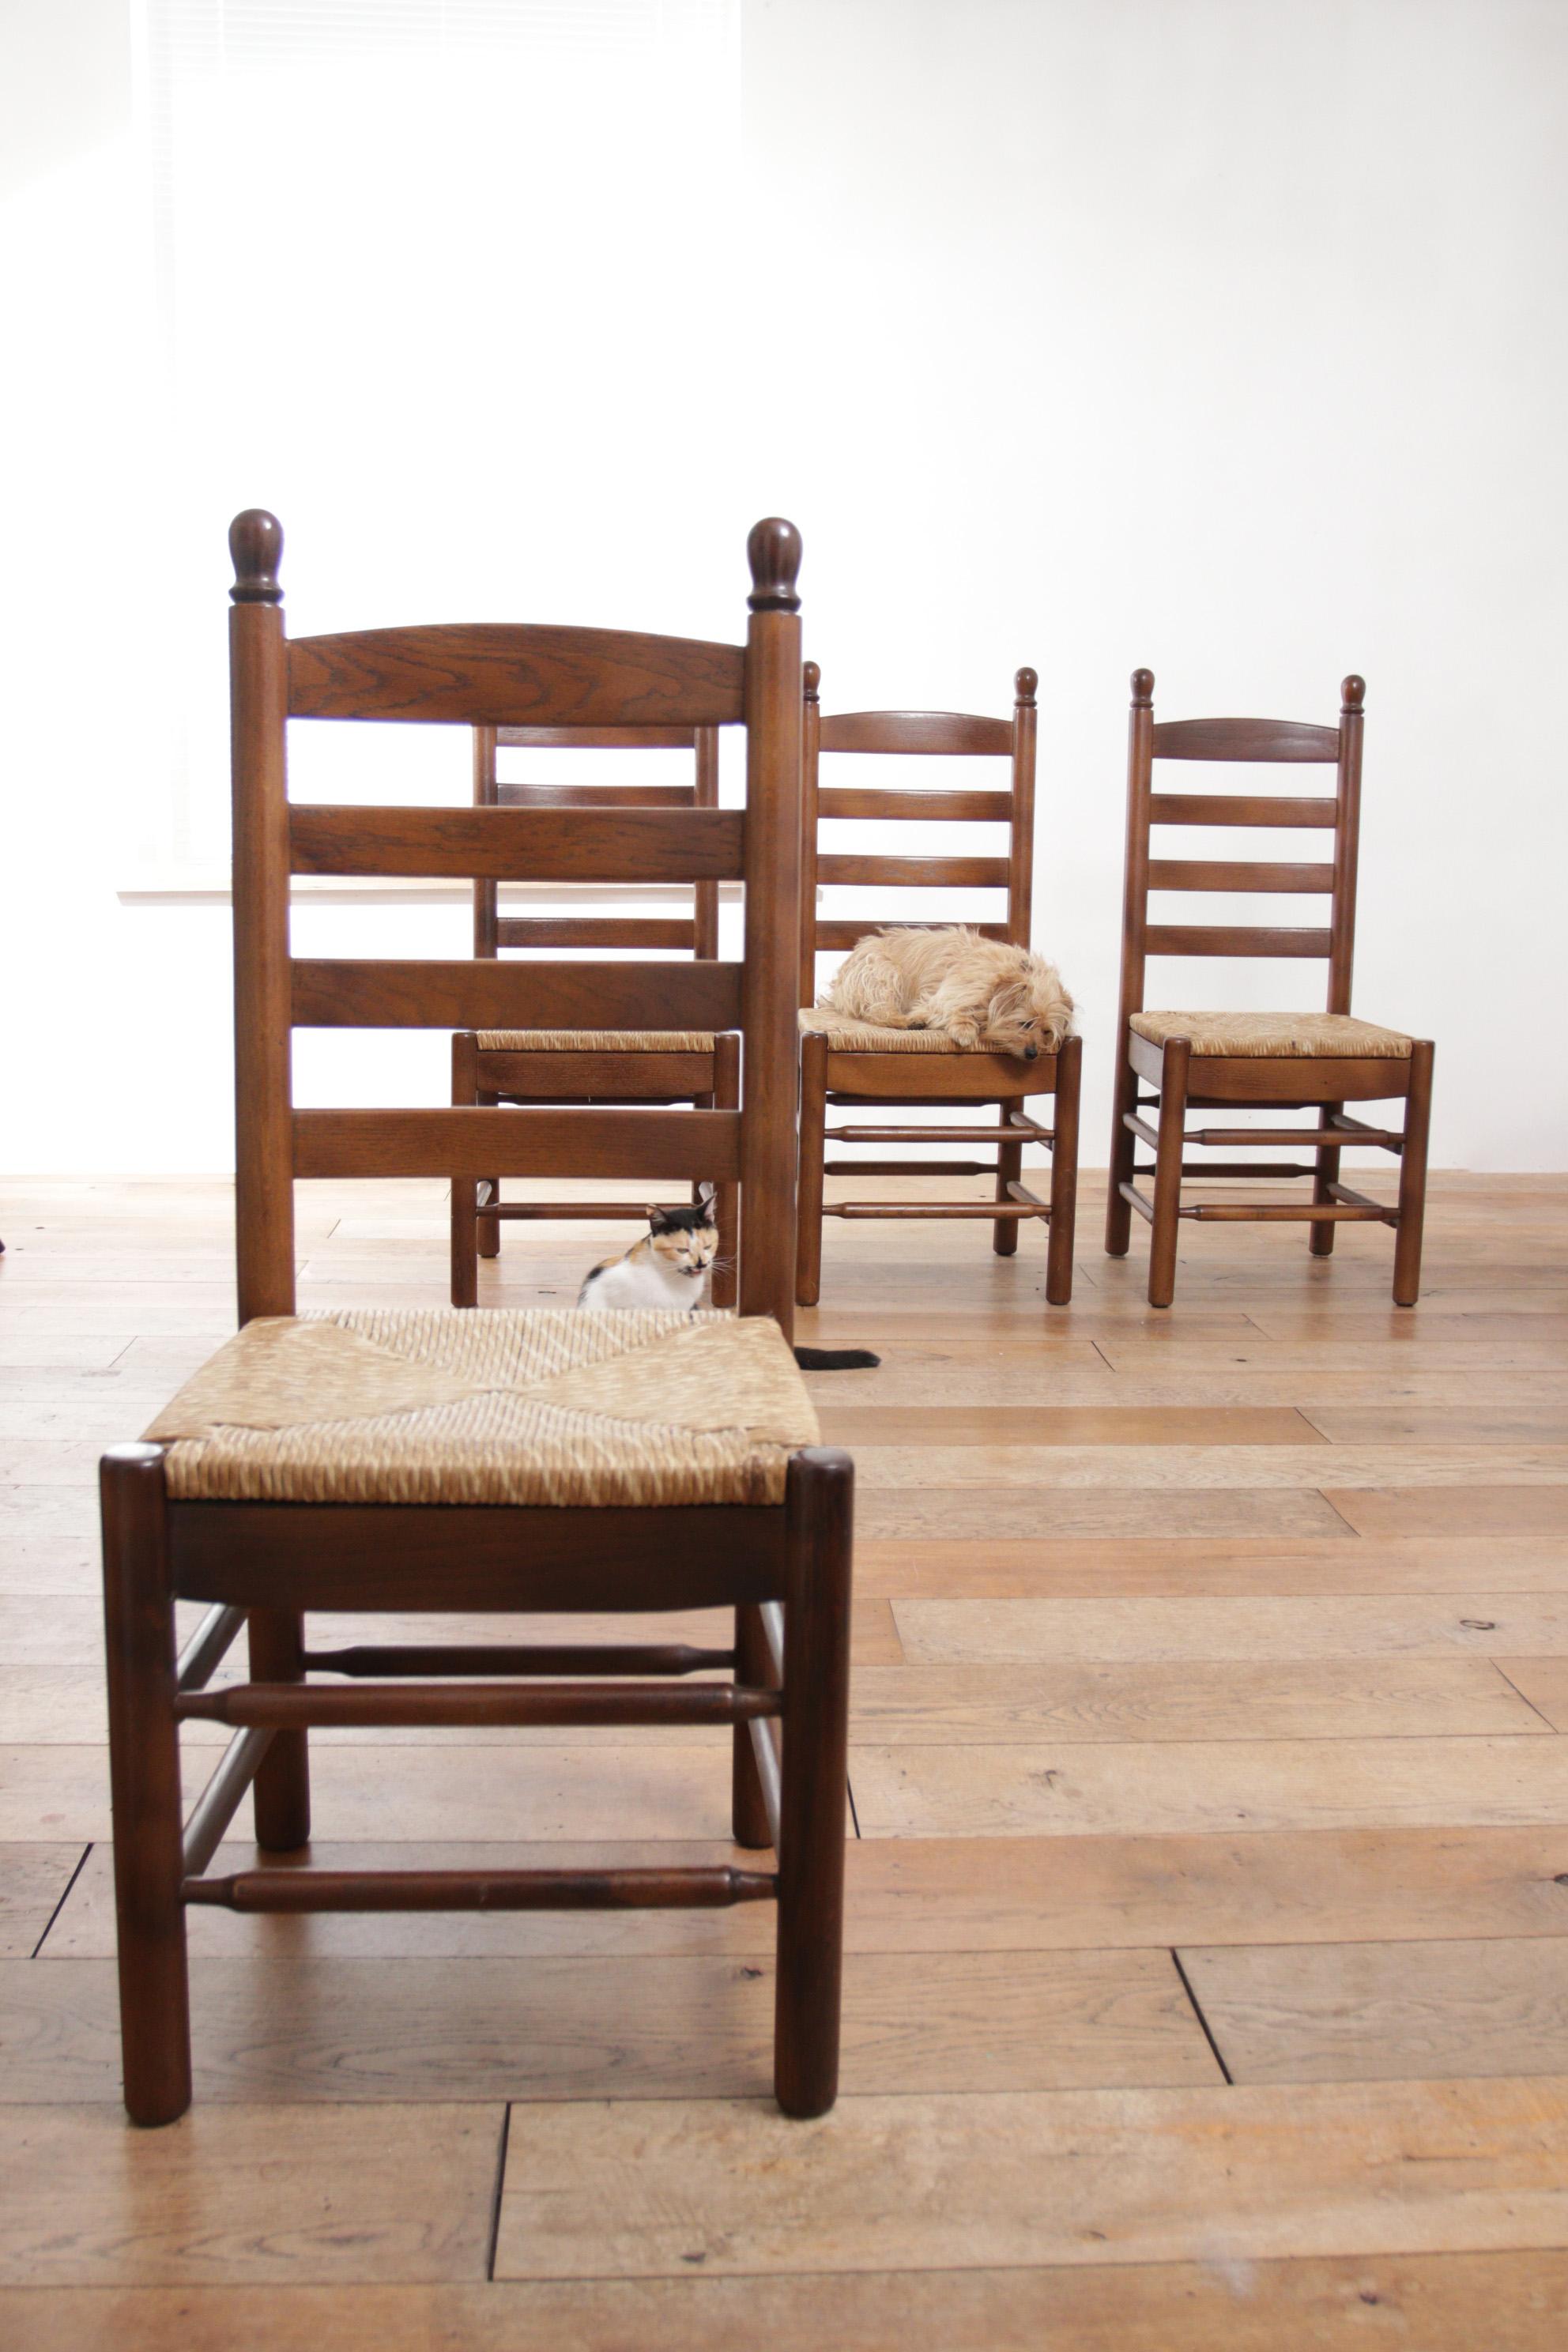 Französisch Leiter zurück Eiche Binsen Sitz Esszimmerstühle. Diese schönen, in den 1970er Jahren hergestellten Stühle haben ein Gestell aus massivem Eichenholz und eine Sitzfläche aus geflochtenem Binsengeflecht, die eine harmonische Mischung aus